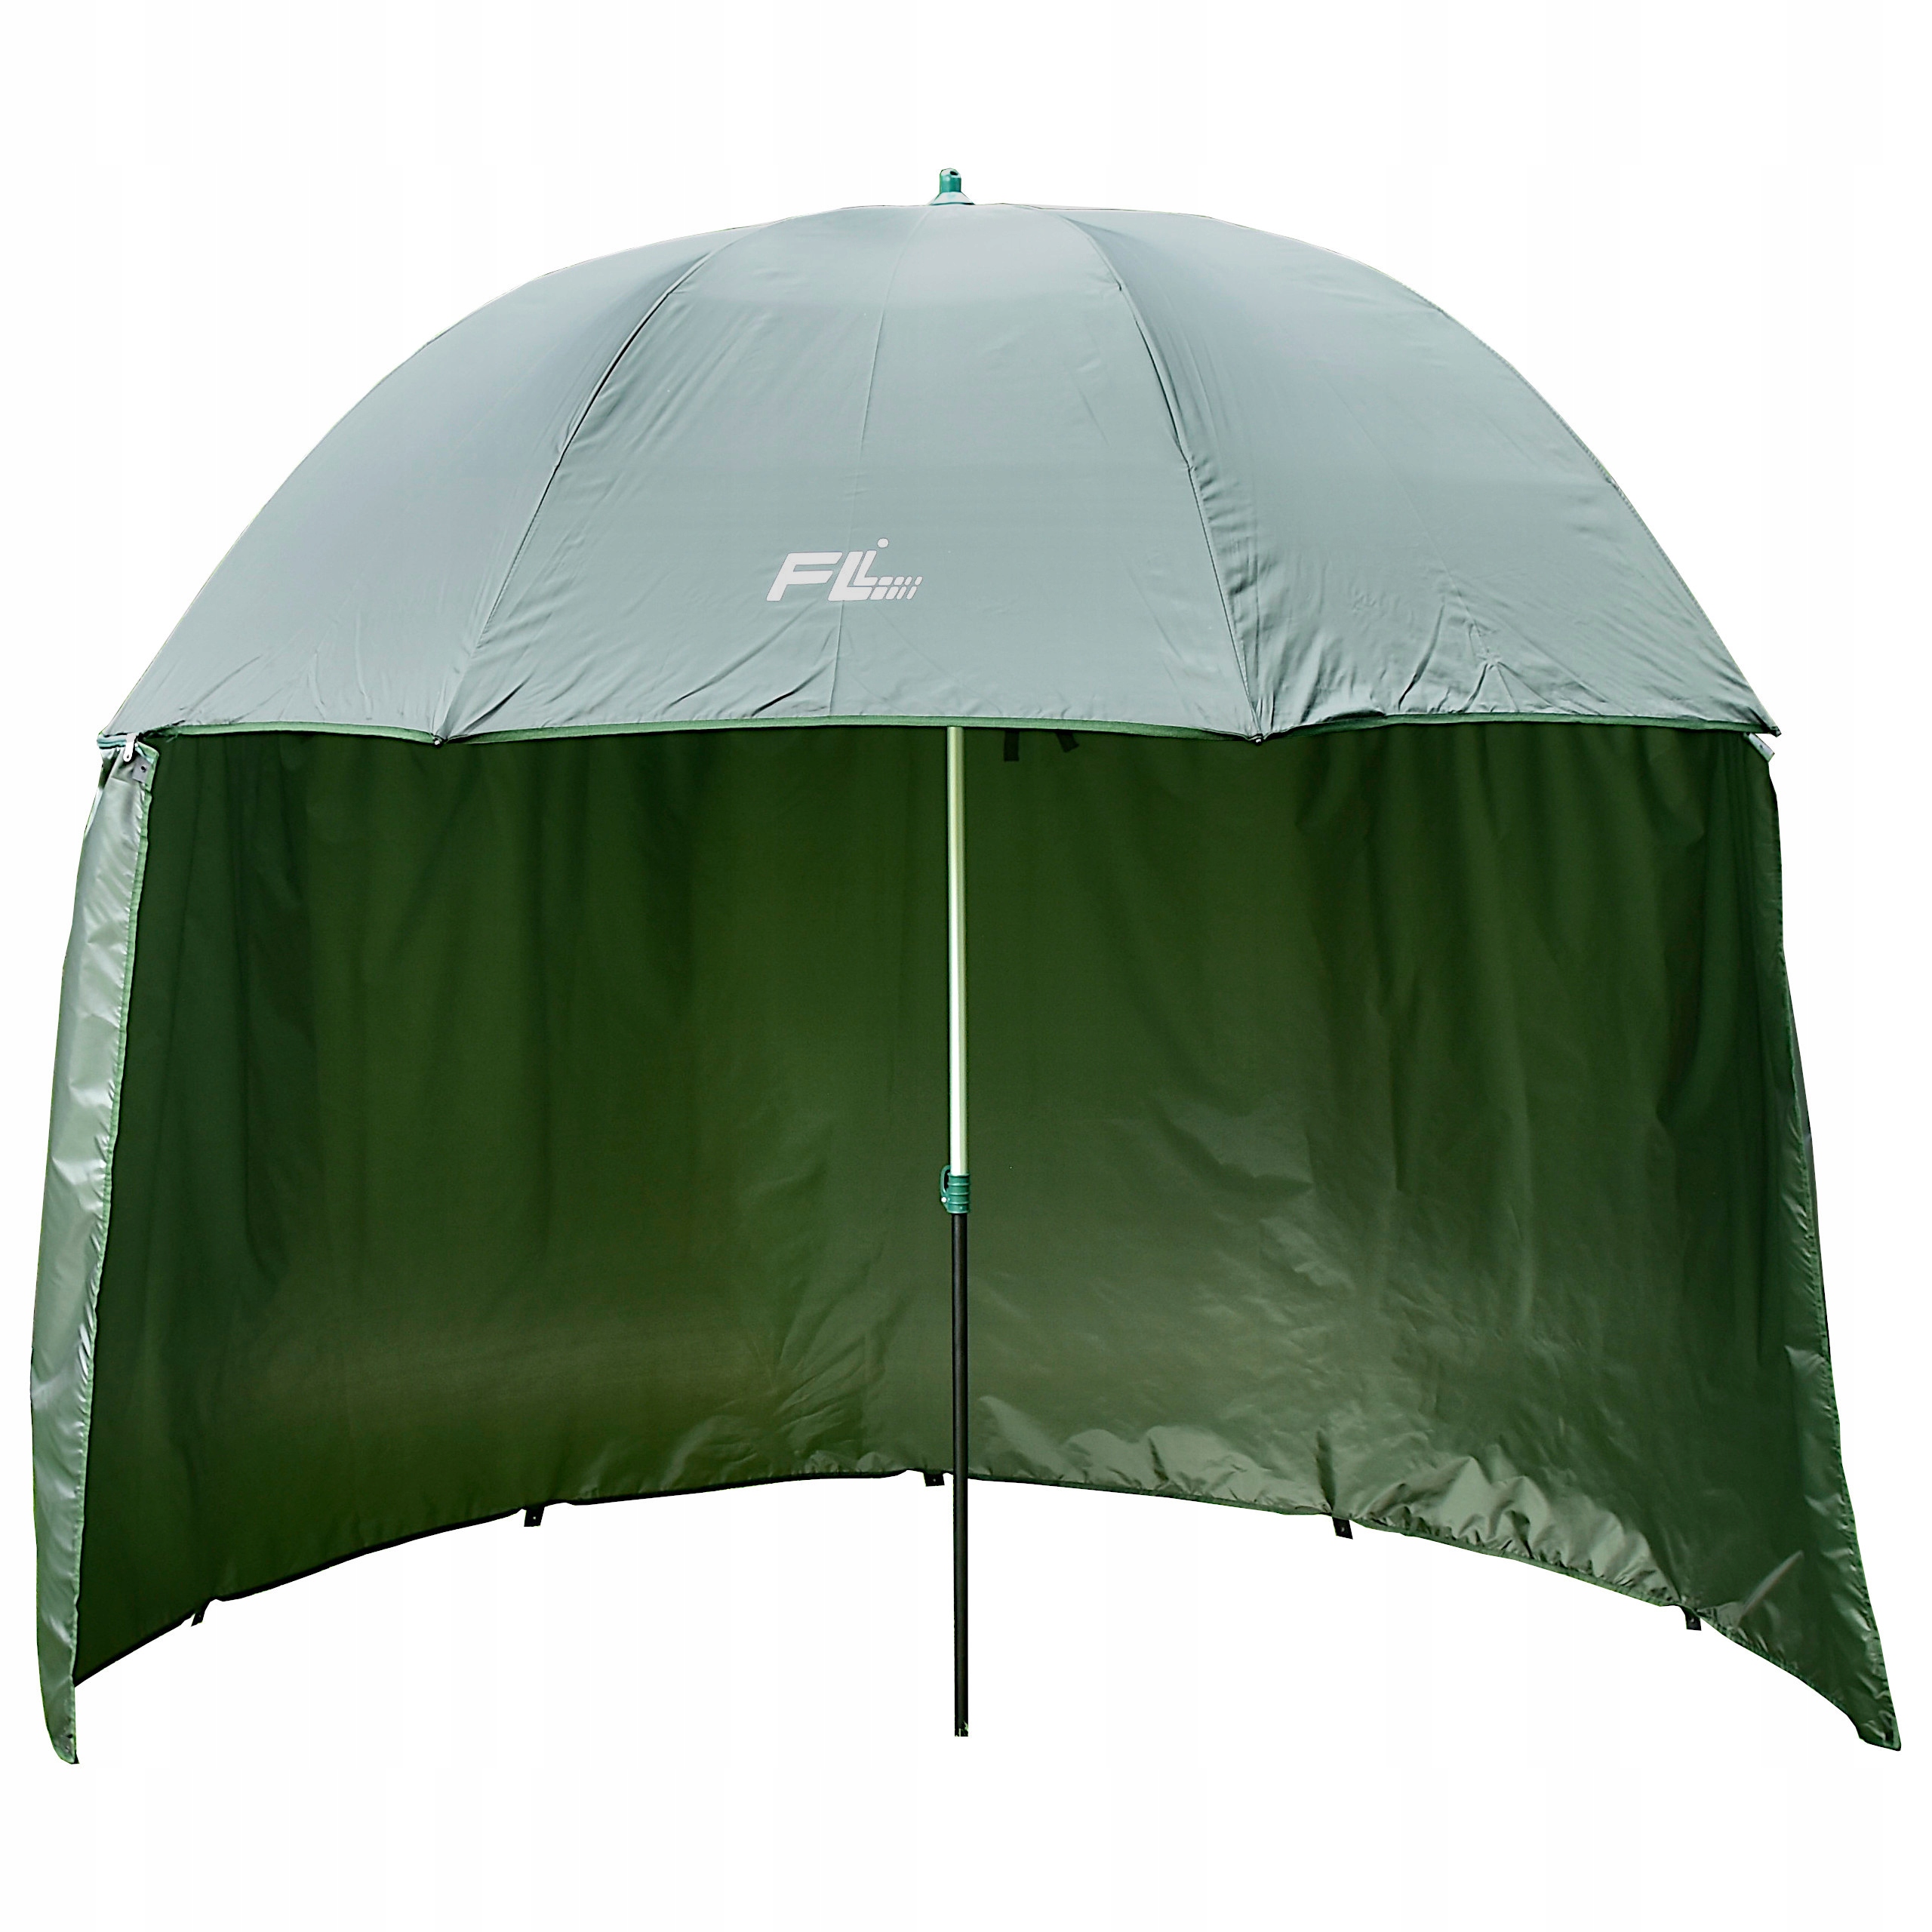 Палатки зонтичного типа. Зонт Flagman зеленый нейлон с тентом d2,5м. Flagman зонт рыболовный Match Competition серый нейлон d2,2м 190т. Зонт рыболовный 3м флагман. Зонт рыболовный с тентом Mifine 55051.